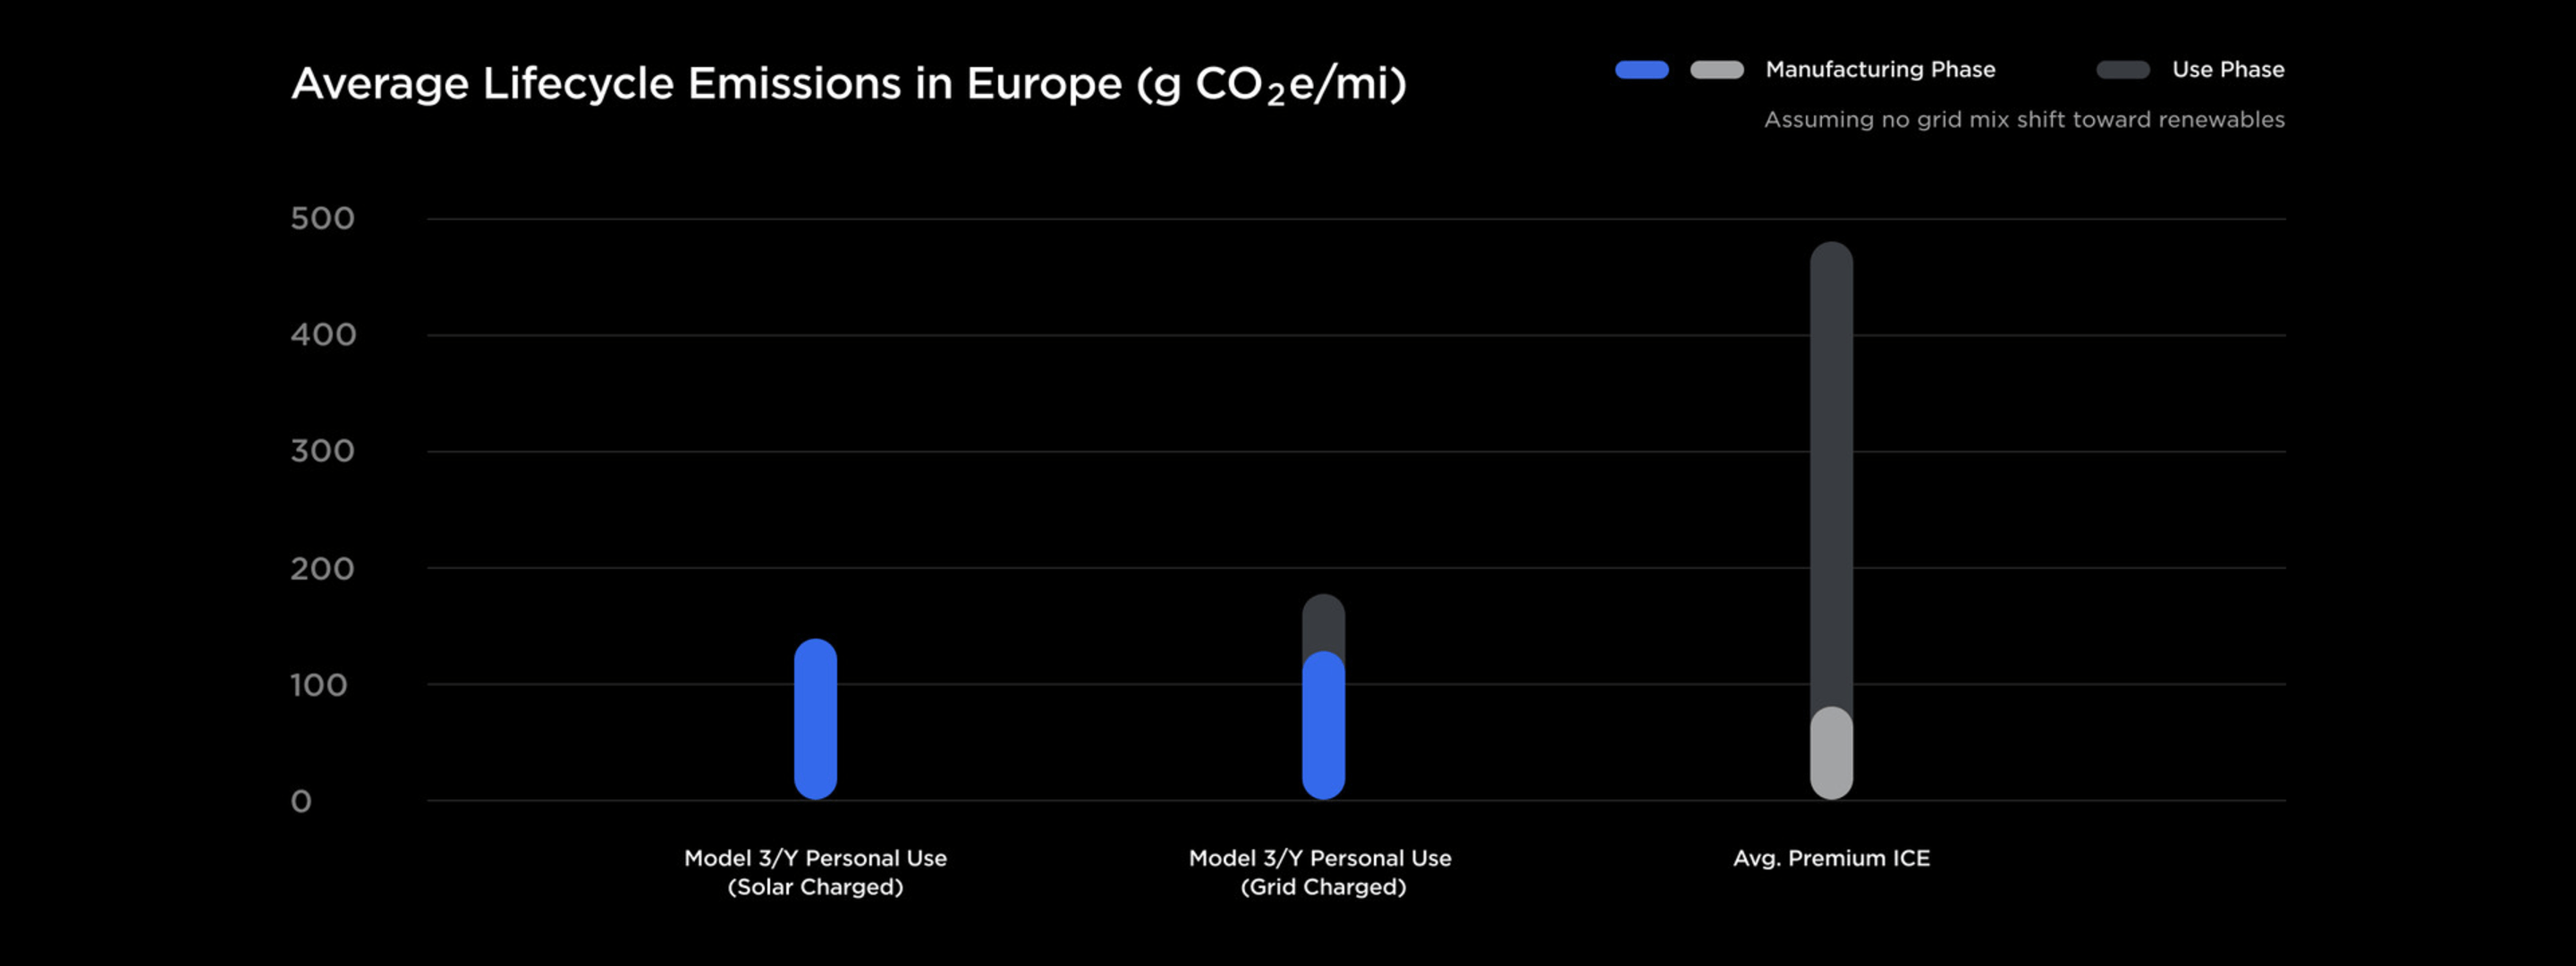 Emissões médias do ciclo de vida na Europa